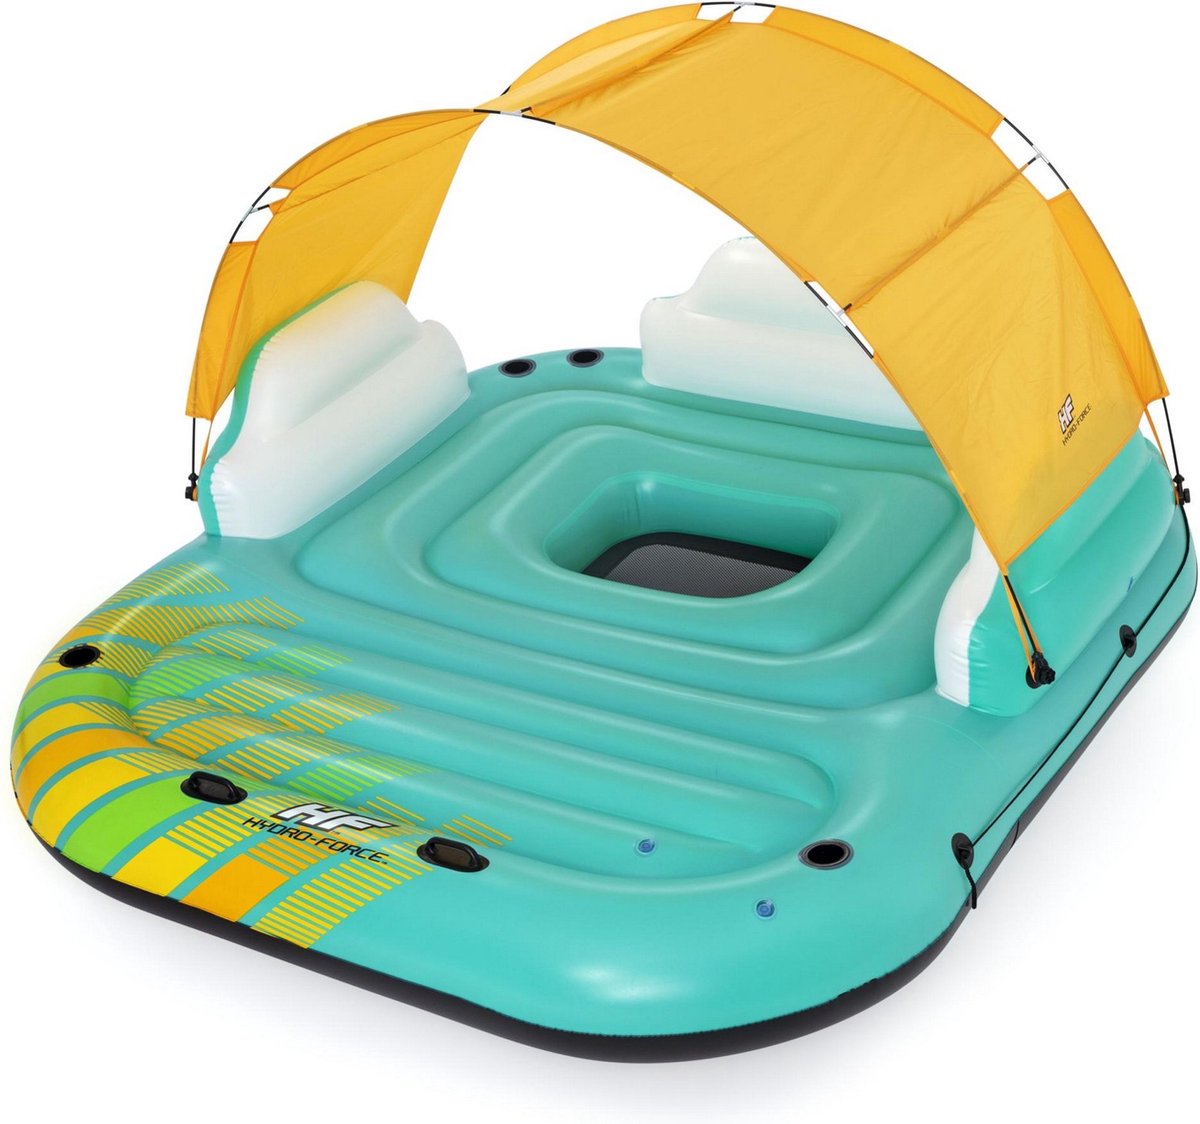 Opblaasbaar Drijvend Eiland met Zonwering - Bestway Hydro Force Sunny Lounge - Zwembad speelgoed - Inflatable Pool Island - Loungegedeelte - Rugleuningen - Voor 5 volwassenen - Luchtbed drijfeiland - Maximaal gewicht 450 kg - Afmeting 291x265x83 cm